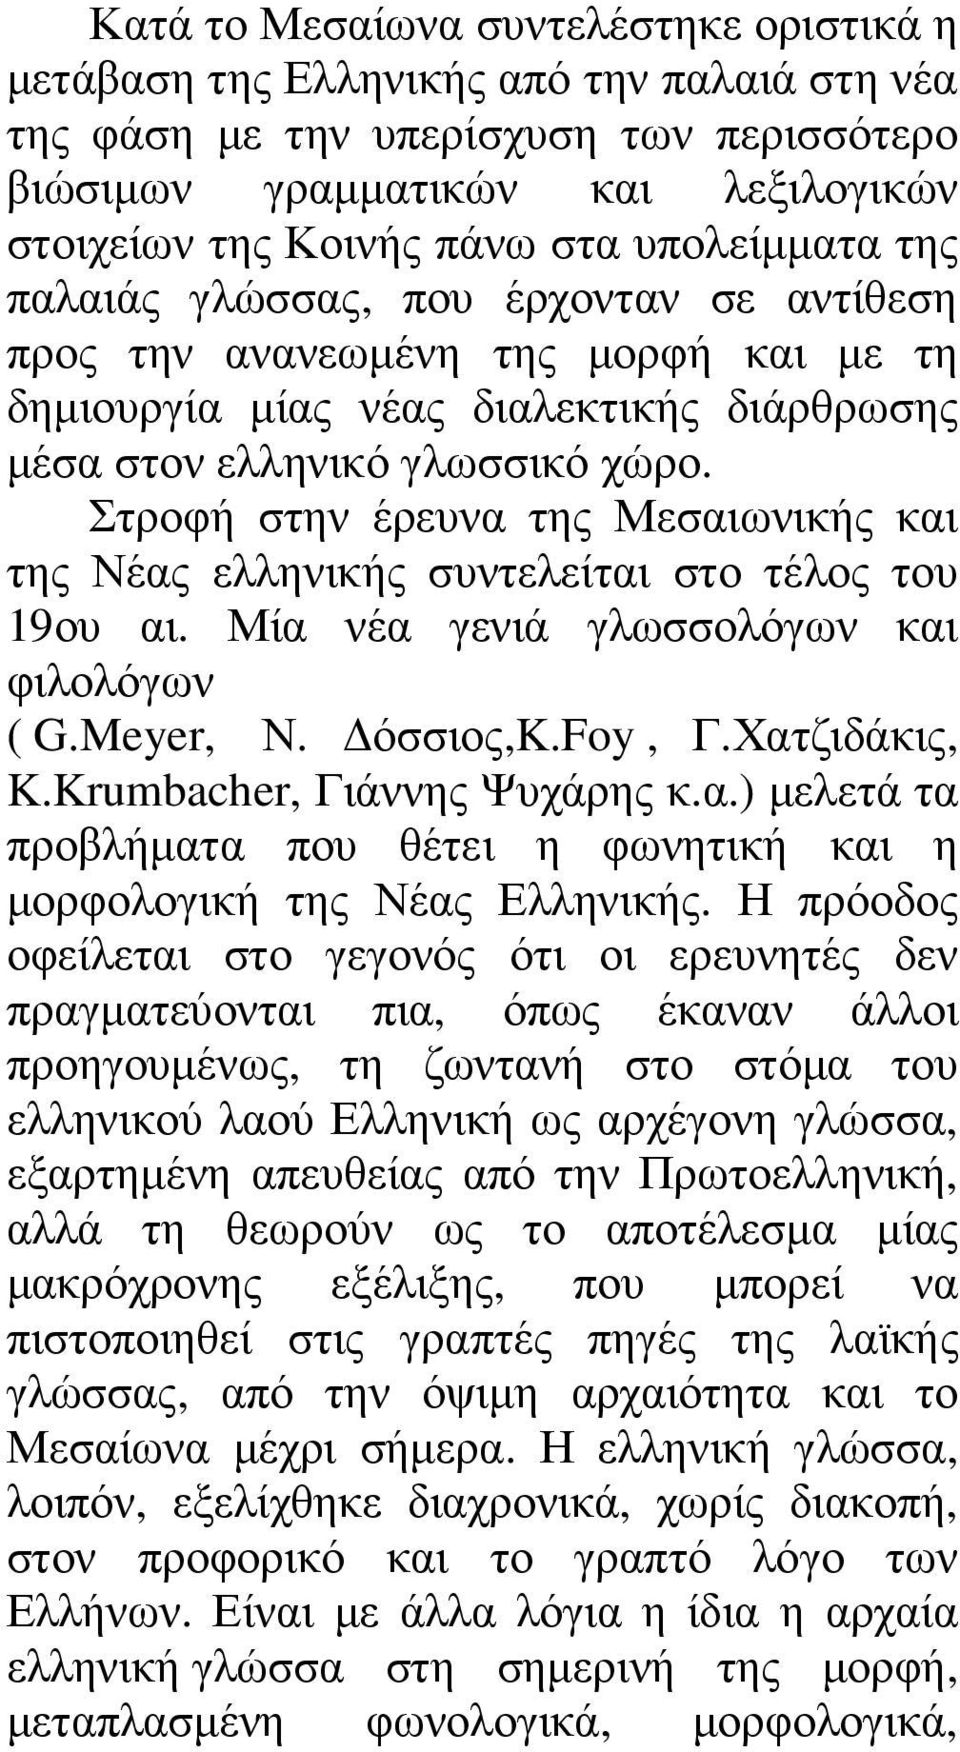 Στροφή στην έρευνα της Μεσαιωνικής και της Νέας ελληνικής συντελείται στο τέλος του 19ου αι. Μία νέα γενιά γλωσσολόγων και φιλολόγων ( G.Meyer, Ν. όσσιος,k.foy, Γ.Χατζιδάκις, K.